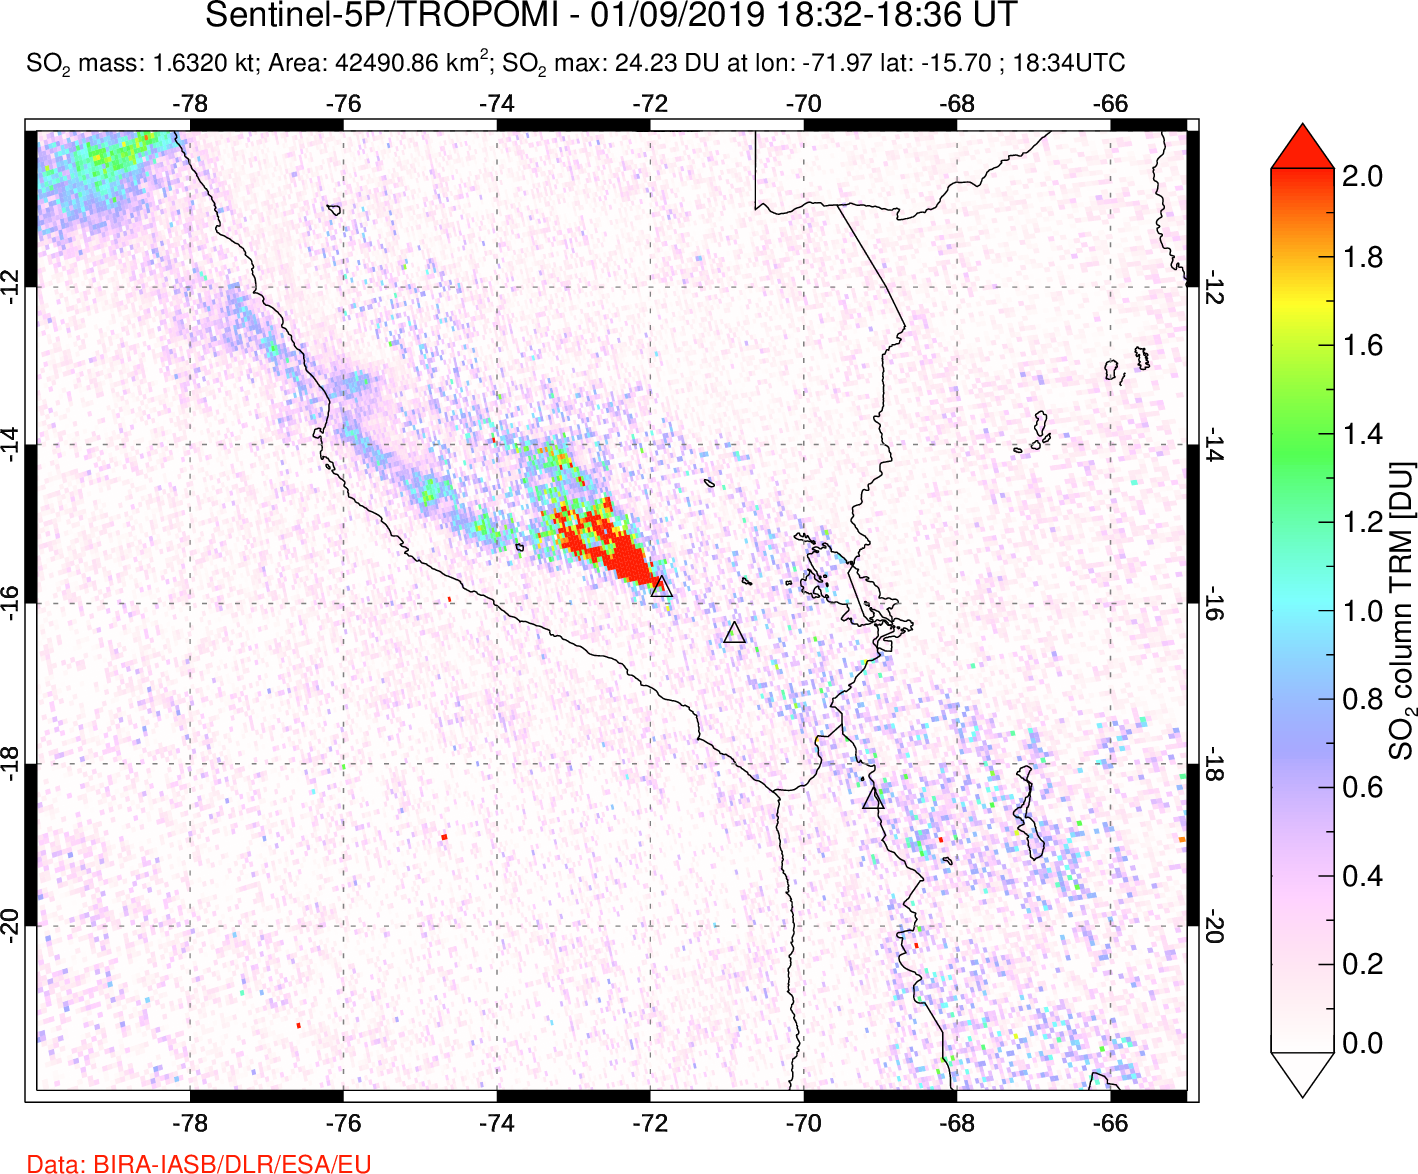 A sulfur dioxide image over Peru on Jan 09, 2019.